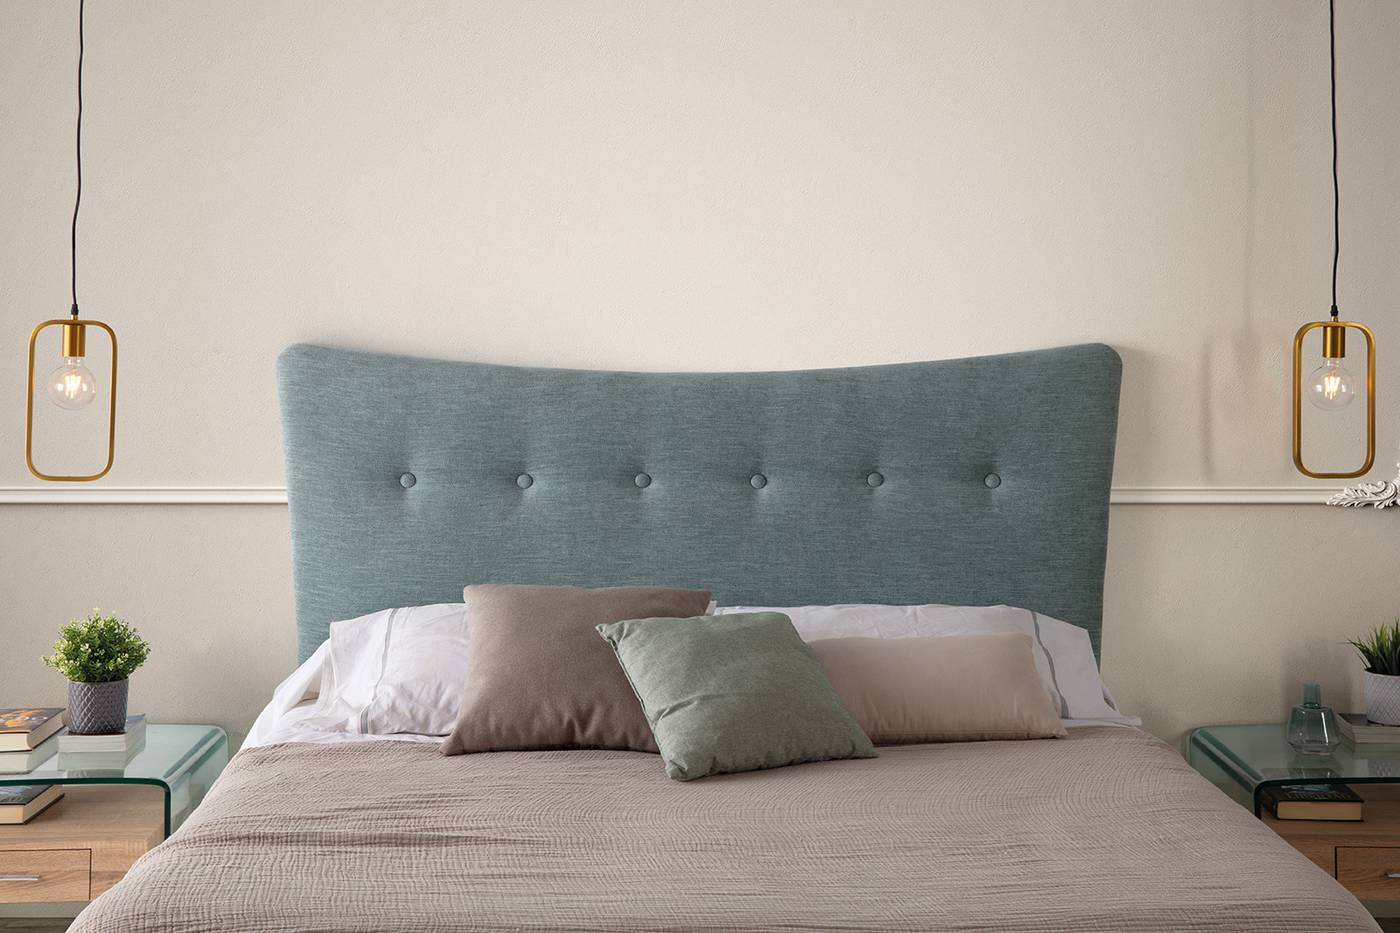 Cabezal para cama de matrimonio tapizado en polipiel, tela o terciopelo. Disponible en varios tamaños y colores.